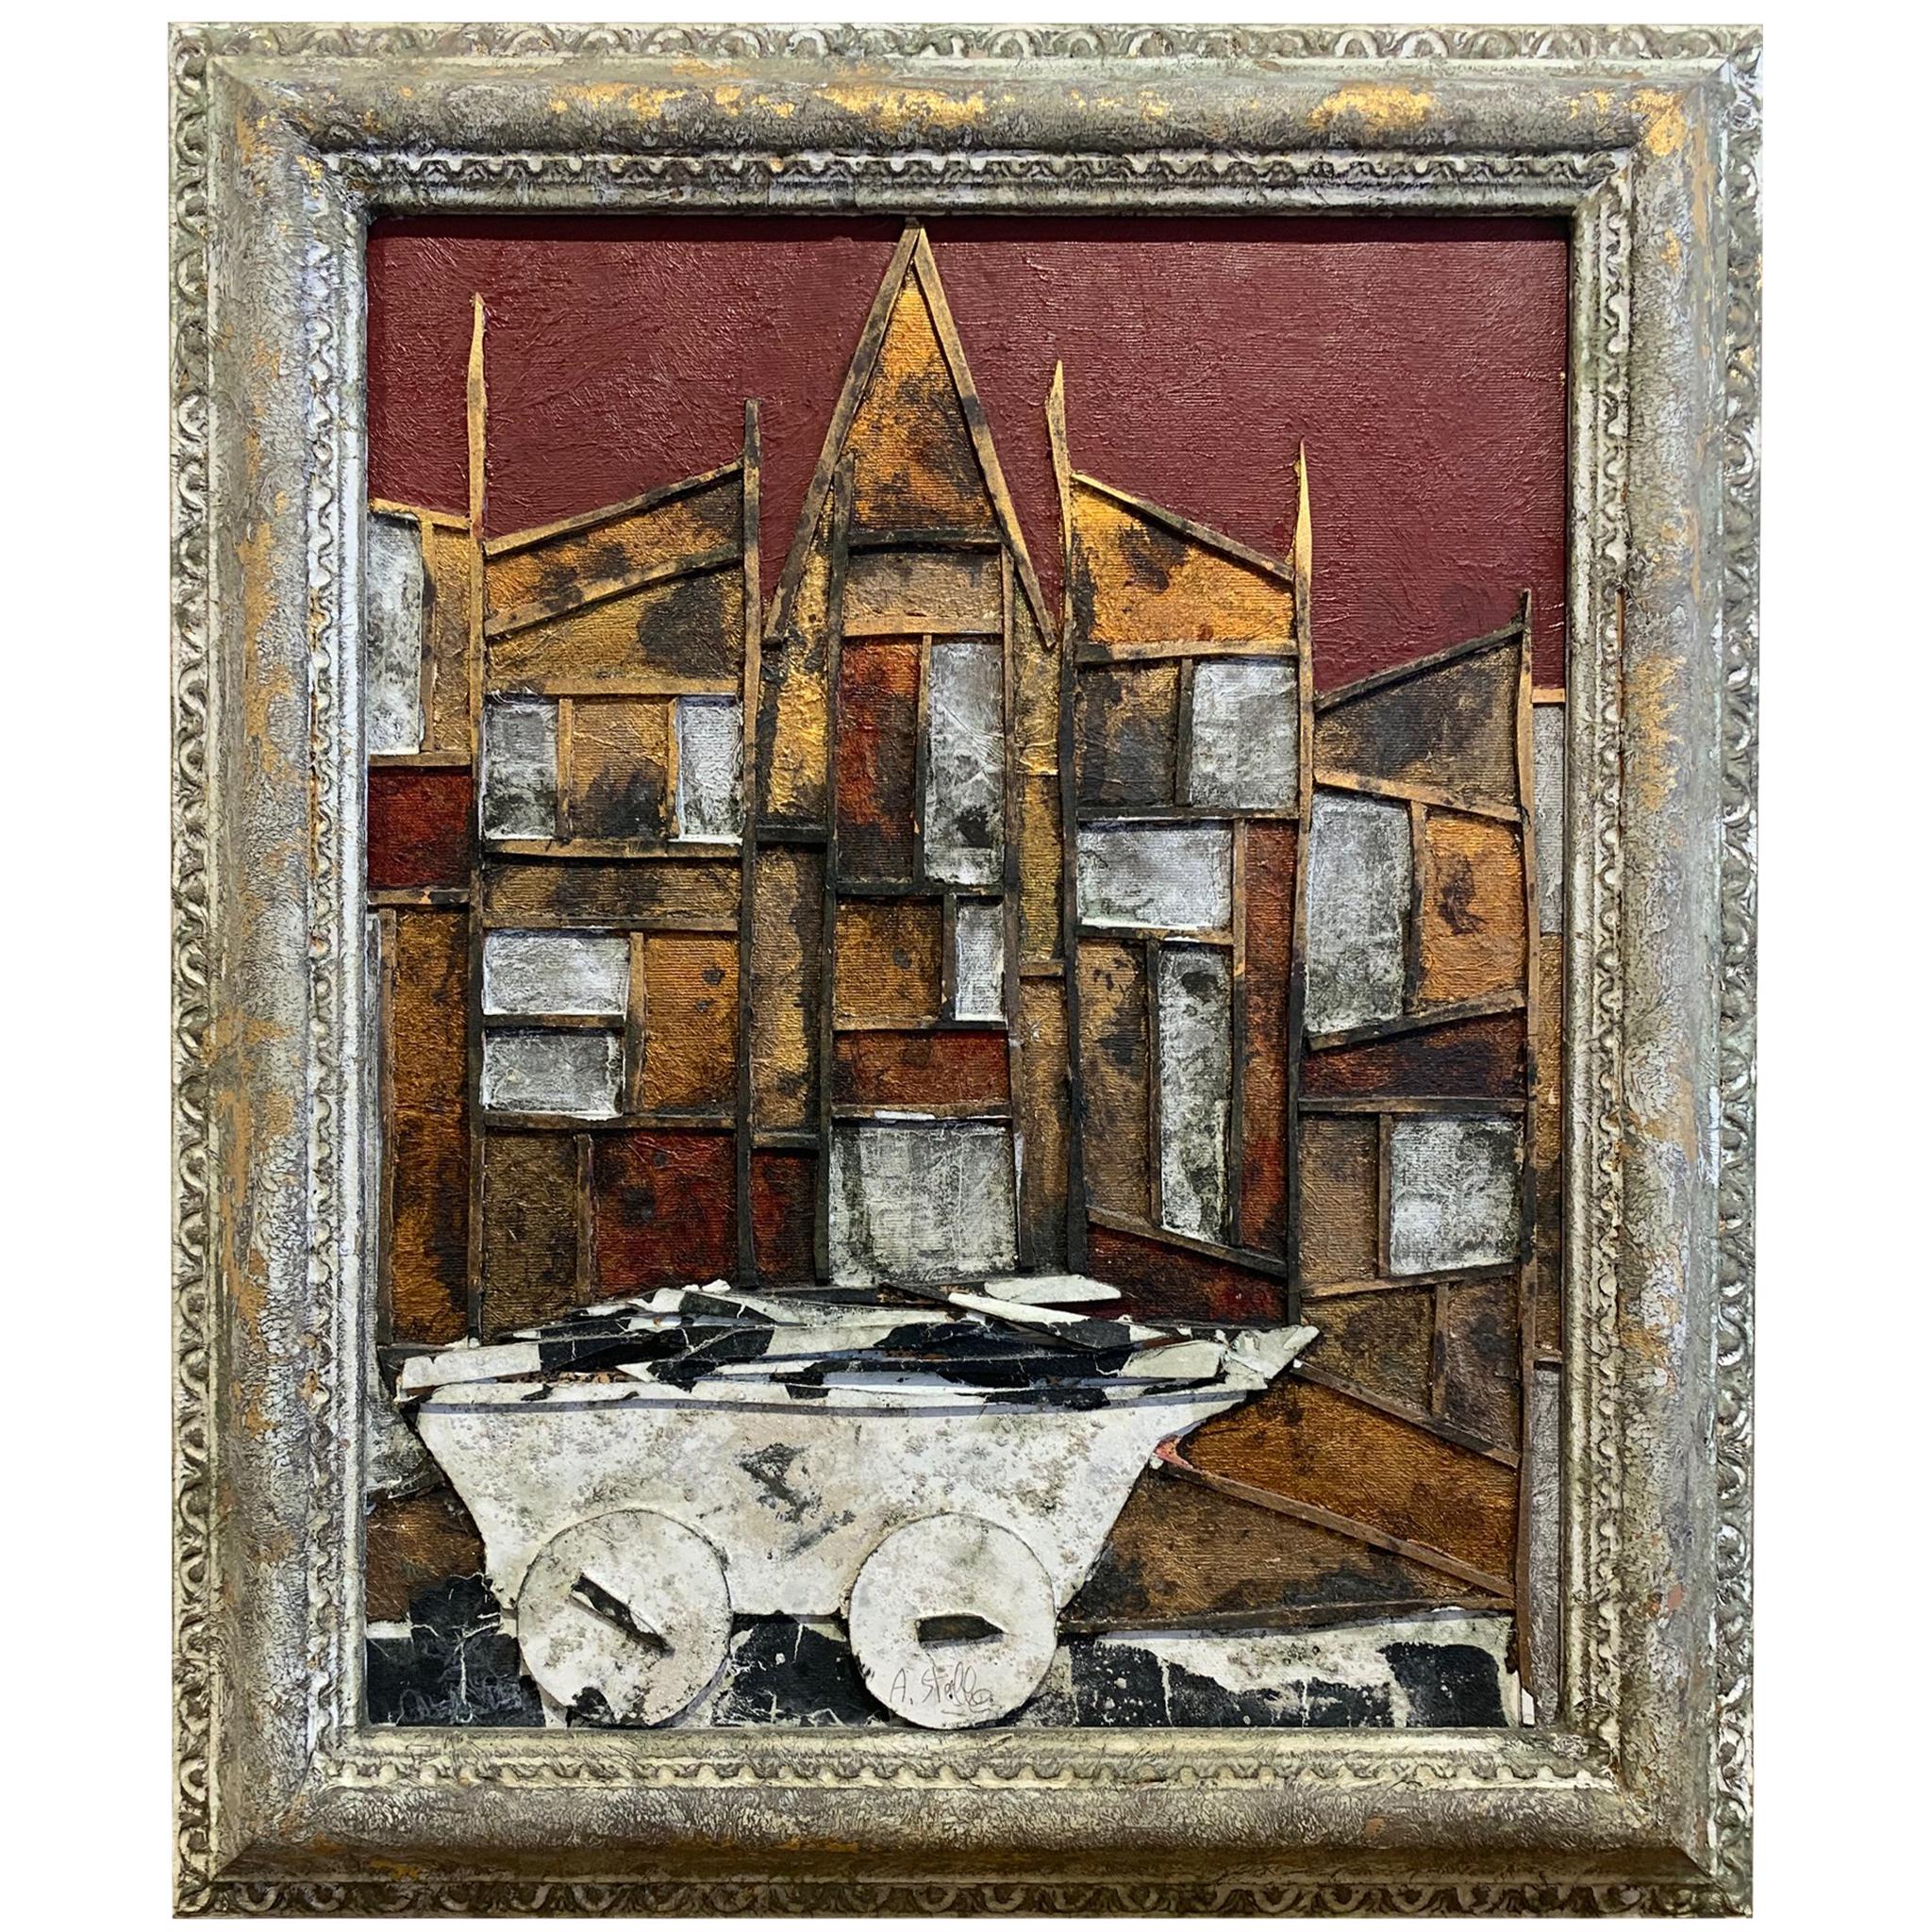 L'histoire du poète  - Andrea Stella - Peinture de paysage abstraite - Techniques mixtes - Mixed Media Art de ANDREA STELLA